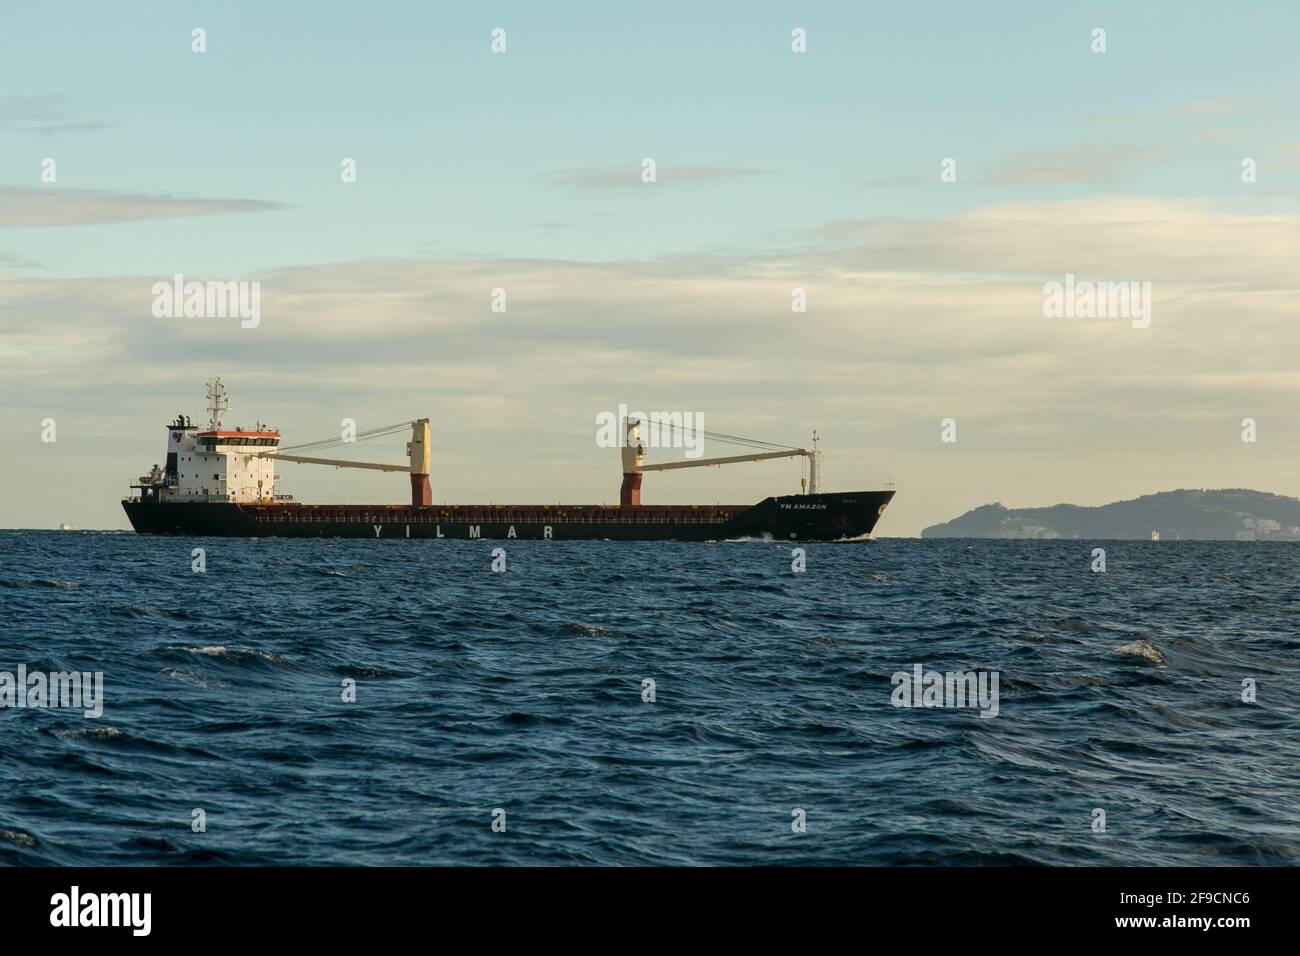 YM Amazone navire (IMO: 9622758) traversant le détroit de Gibraltar est un cargo général qui a été construit en 2013 et navigue sous le drapeau de Malte Banque D'Images